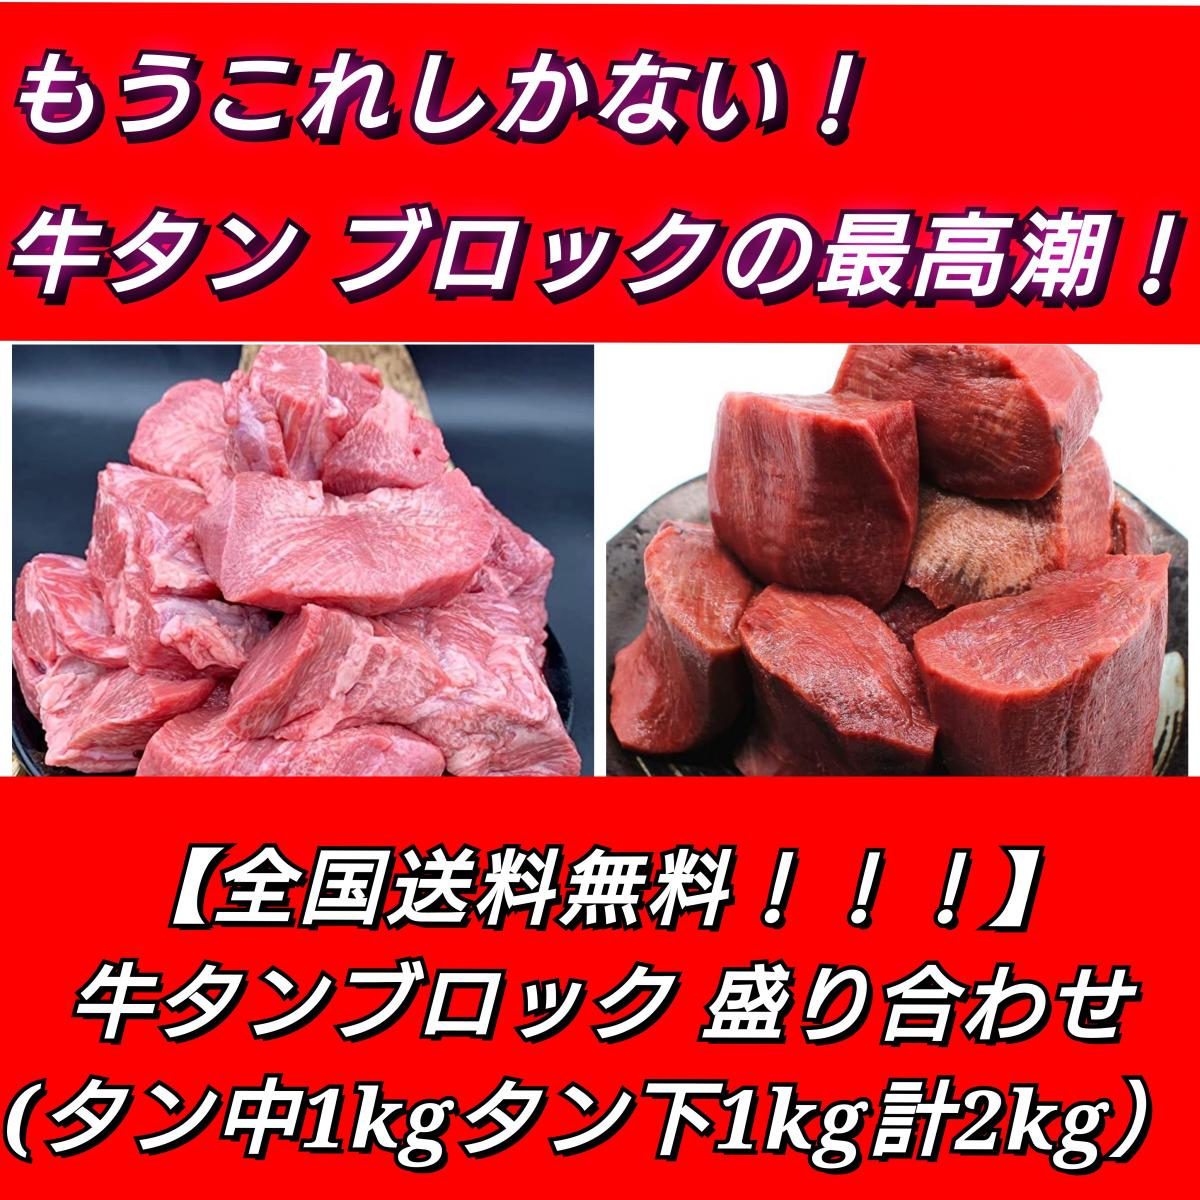 【期間限定価格!】贅沢三昧牛タンブロック盛り合わせ(タン中1kg/タン下1kg)サムネイル